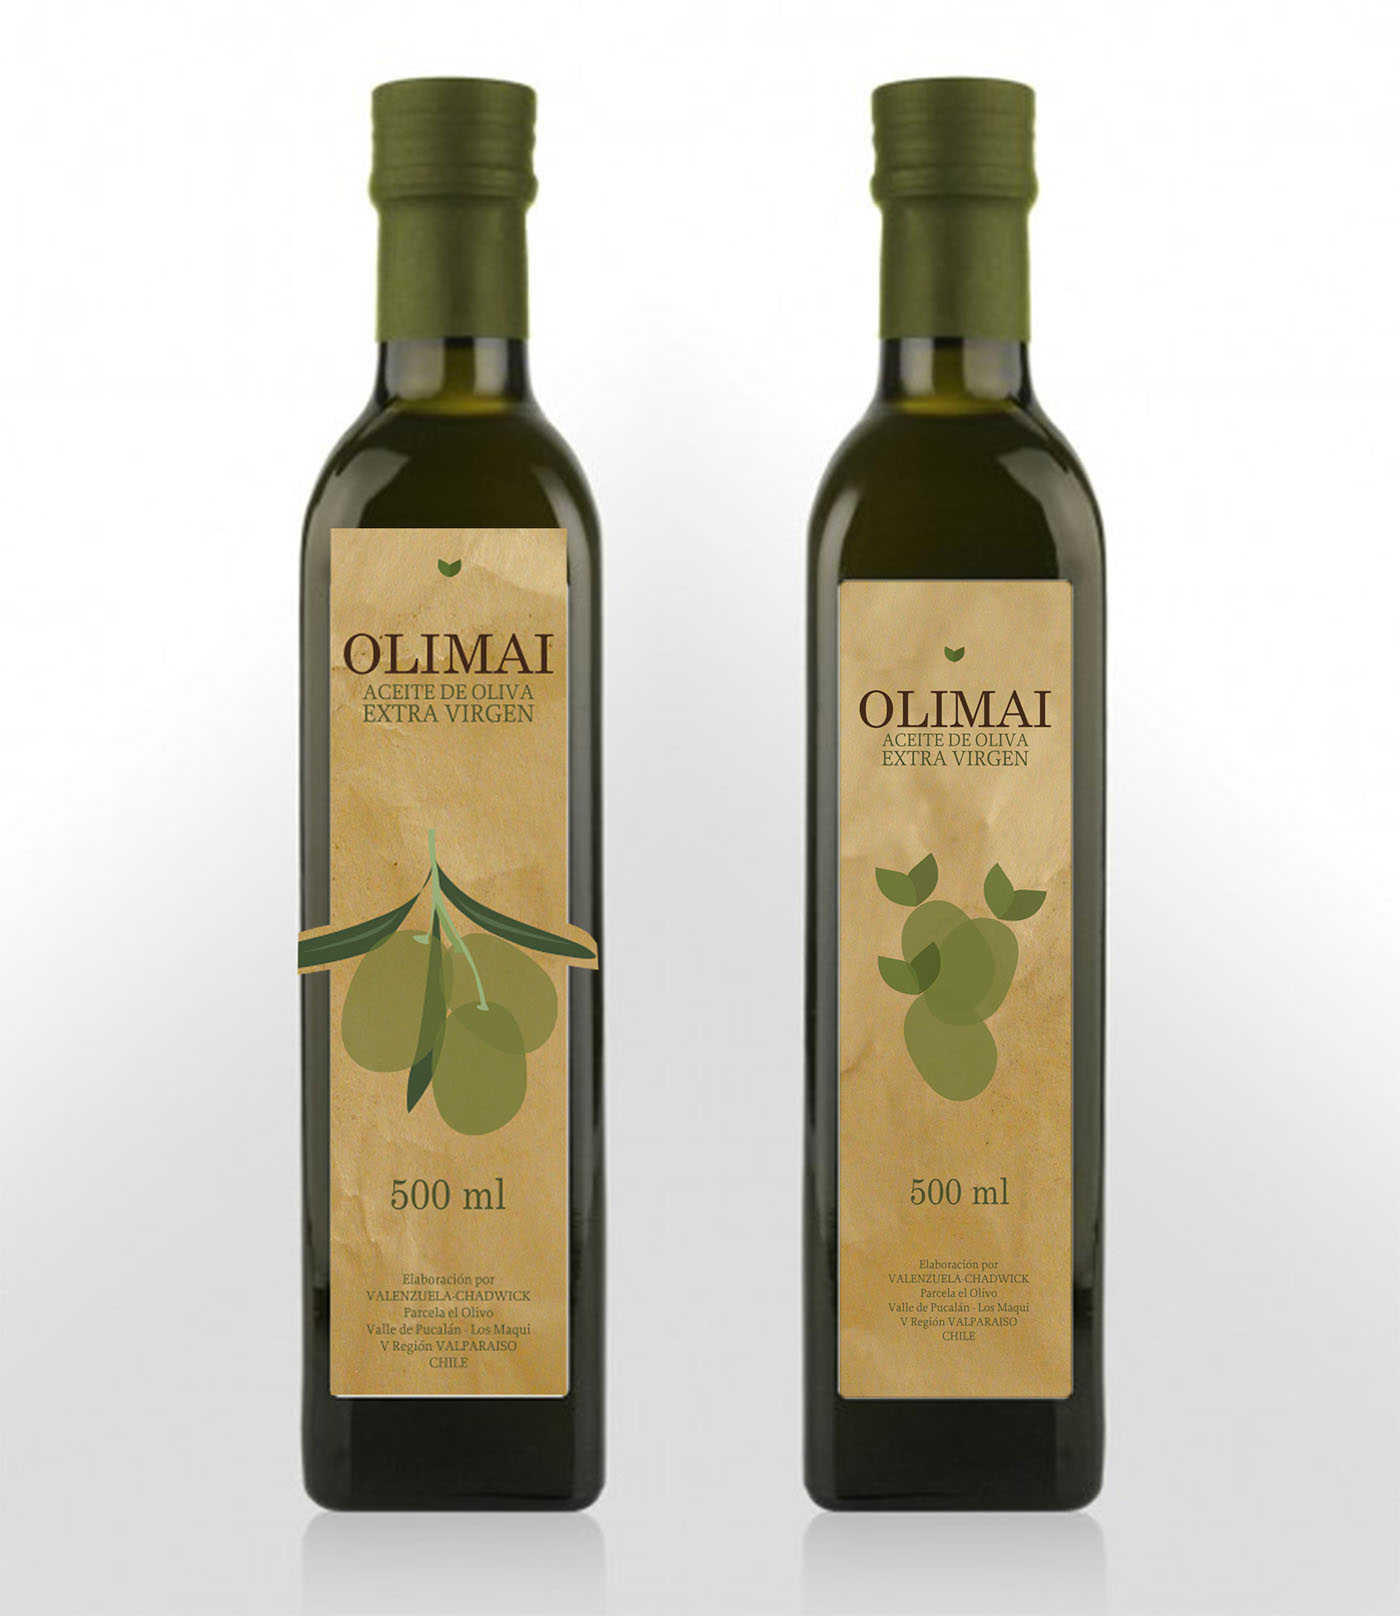 olimai Olive Oil aceite oliva chile Packaging identidad identidad visual identity